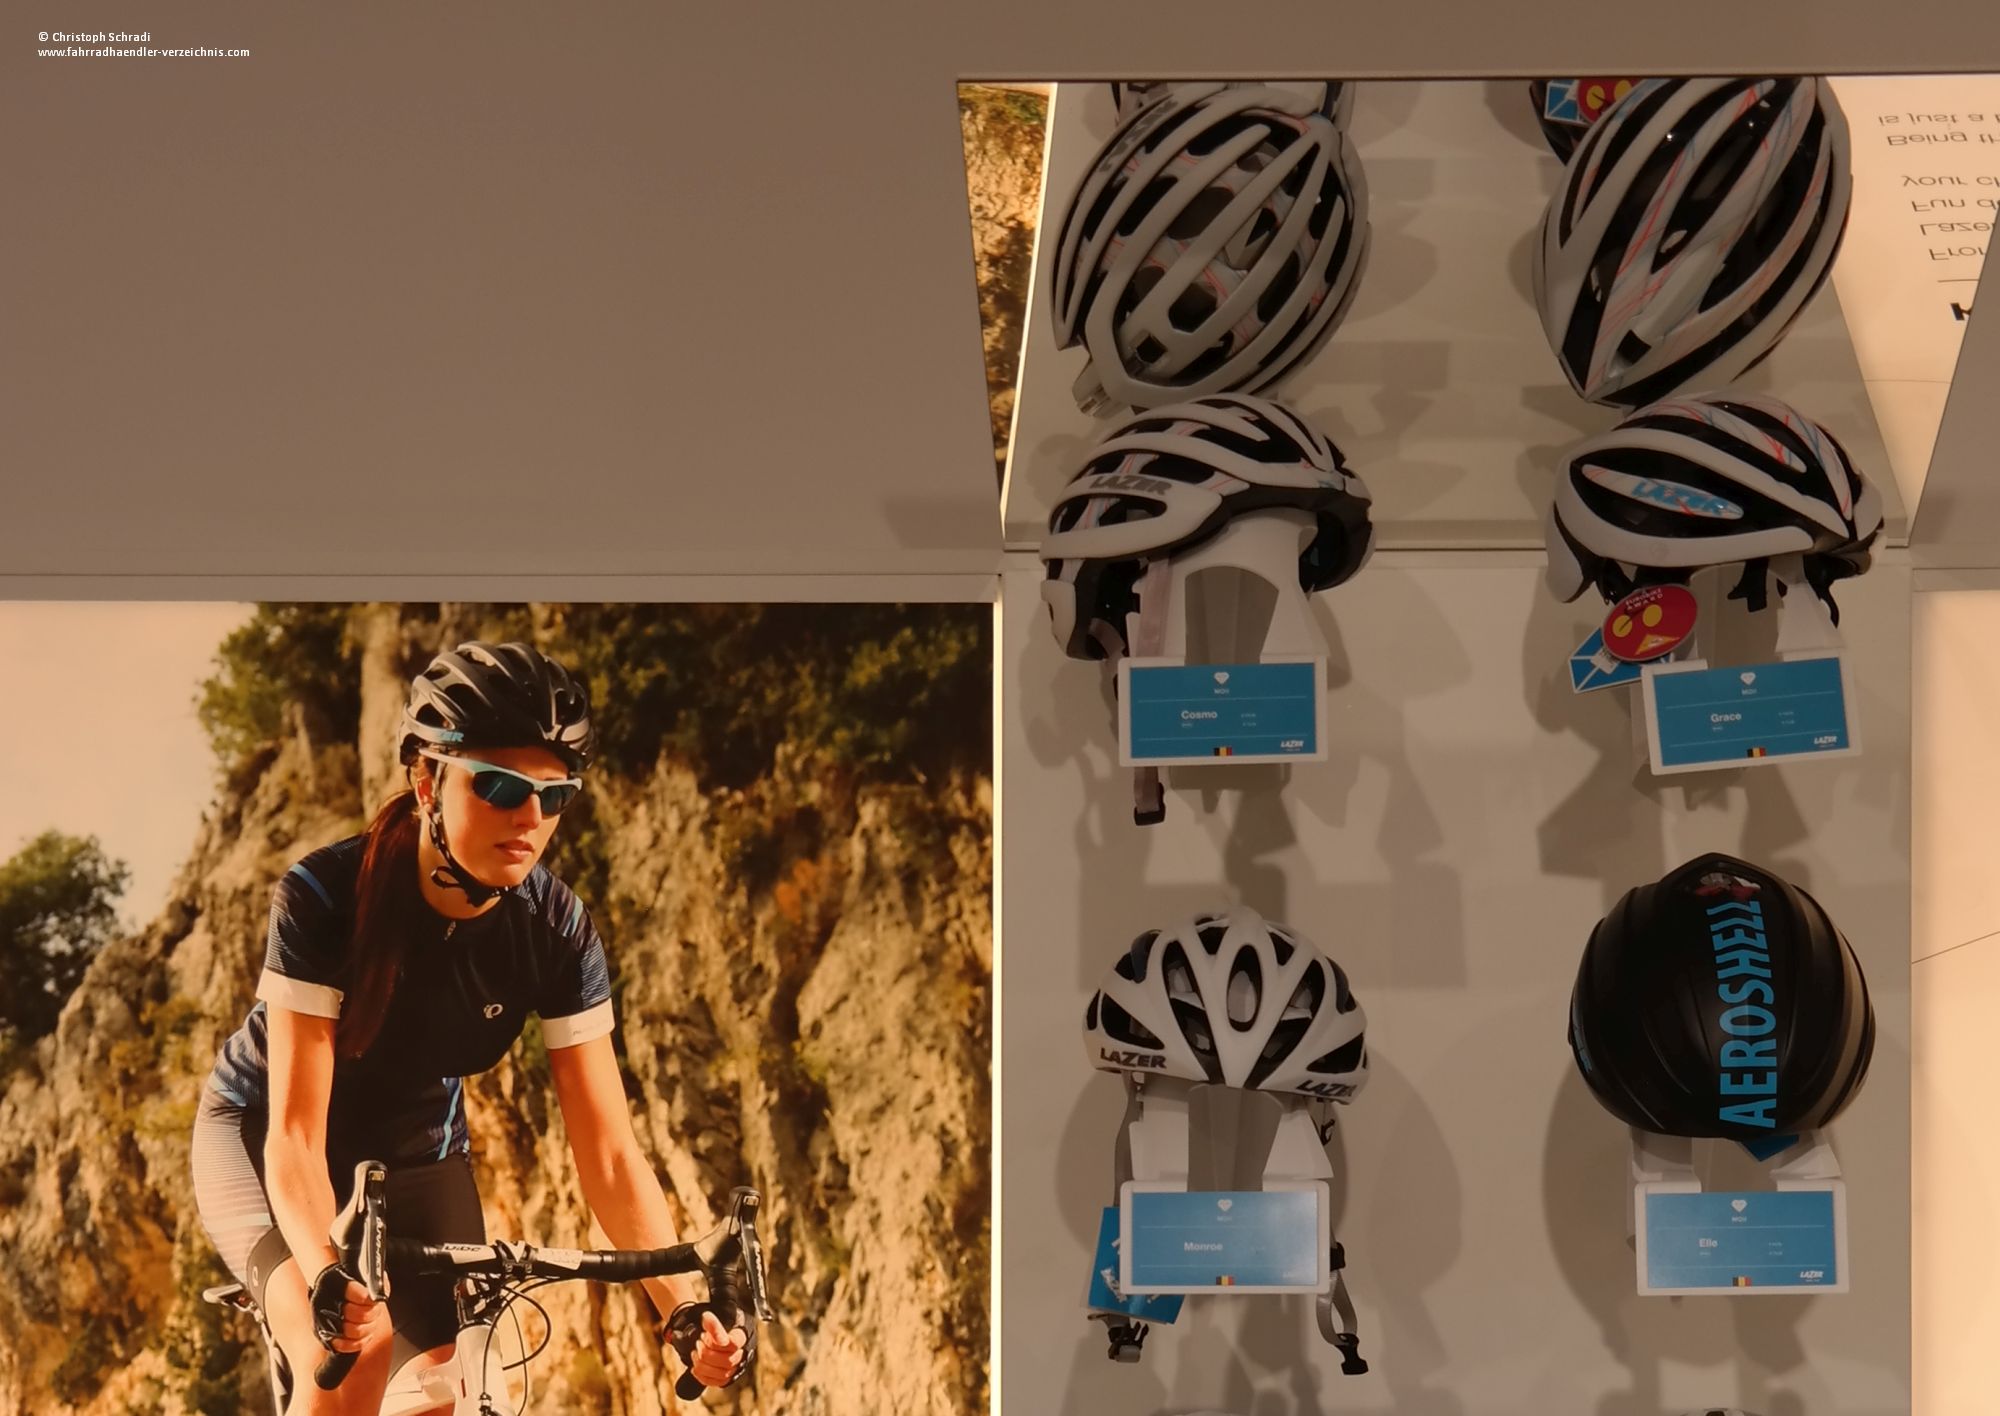 Der belgische Helmhersteller Lazer bietet ein breites Sortiment an Fahrradhelmen an - von MTB über City bis hin zum Rennrad oder BMX